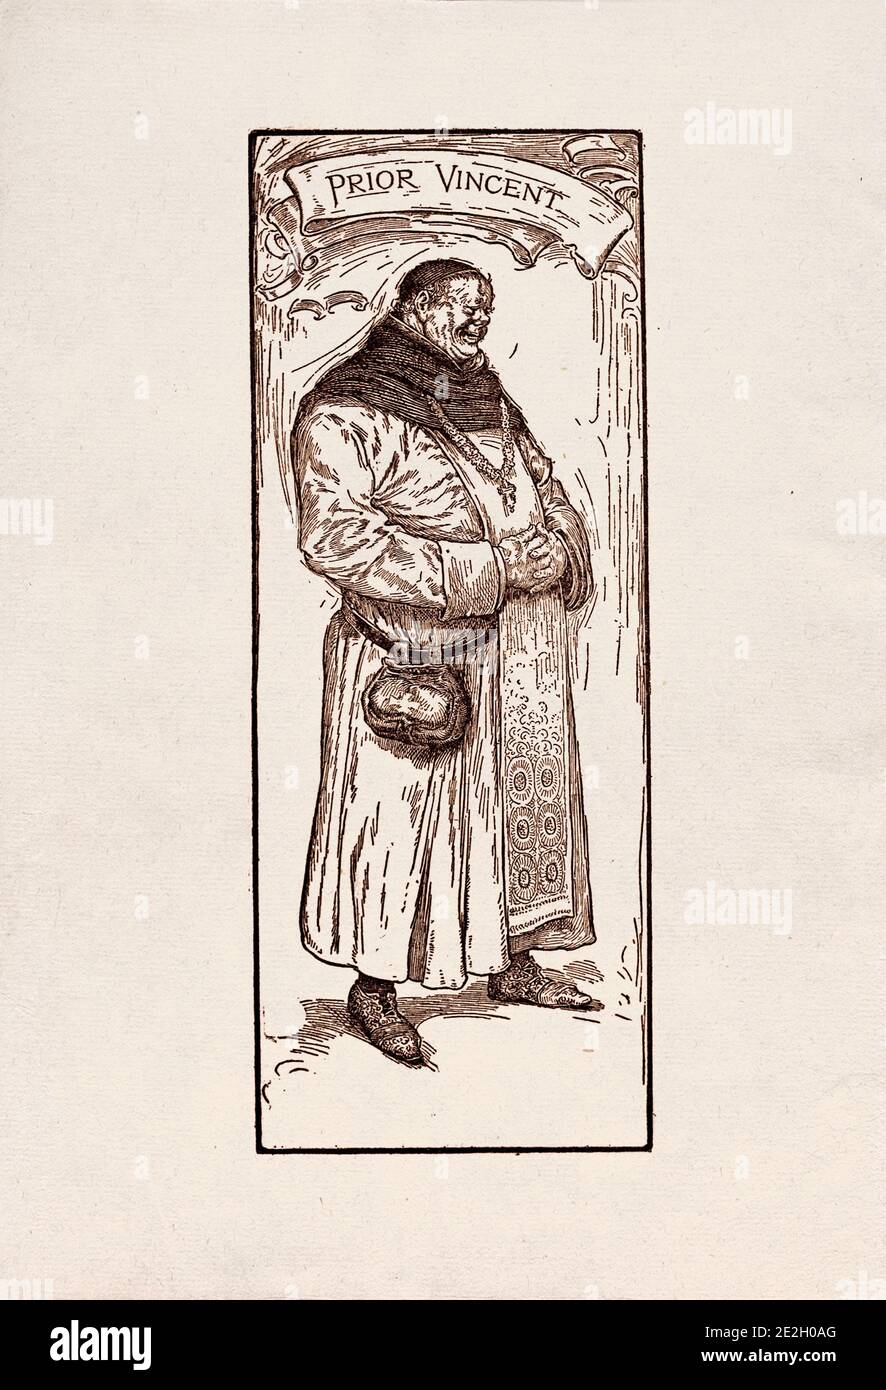 Incisione antica di personaggi letterari del folklore inglese dalle leggende di Robin Hood. Precedente Vincent. Di Louis Rhead. 1912 Foto Stock